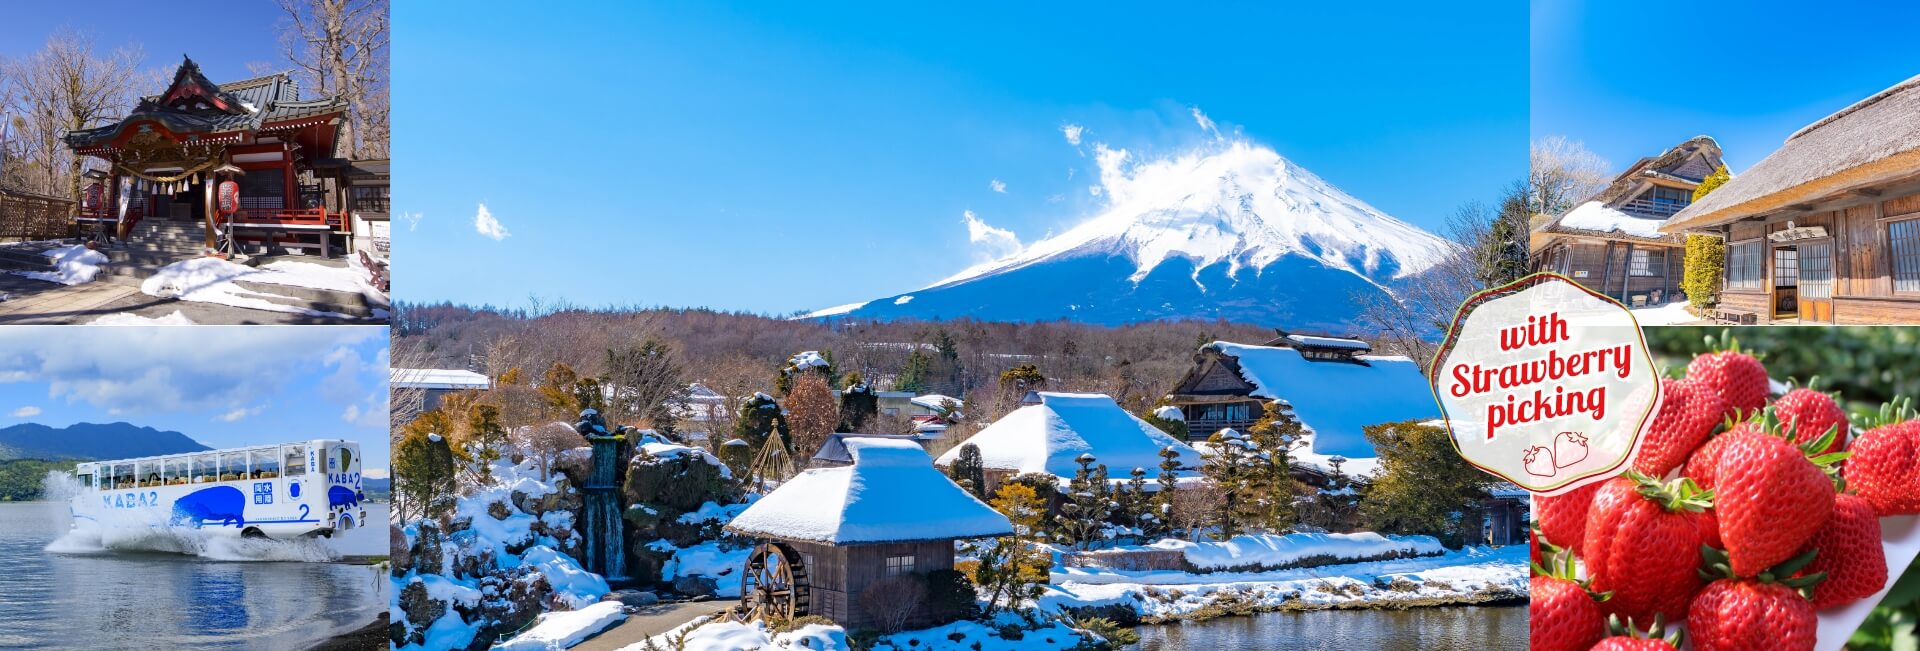 1-Day Mt.Fuji Yamanakako Winter Tour